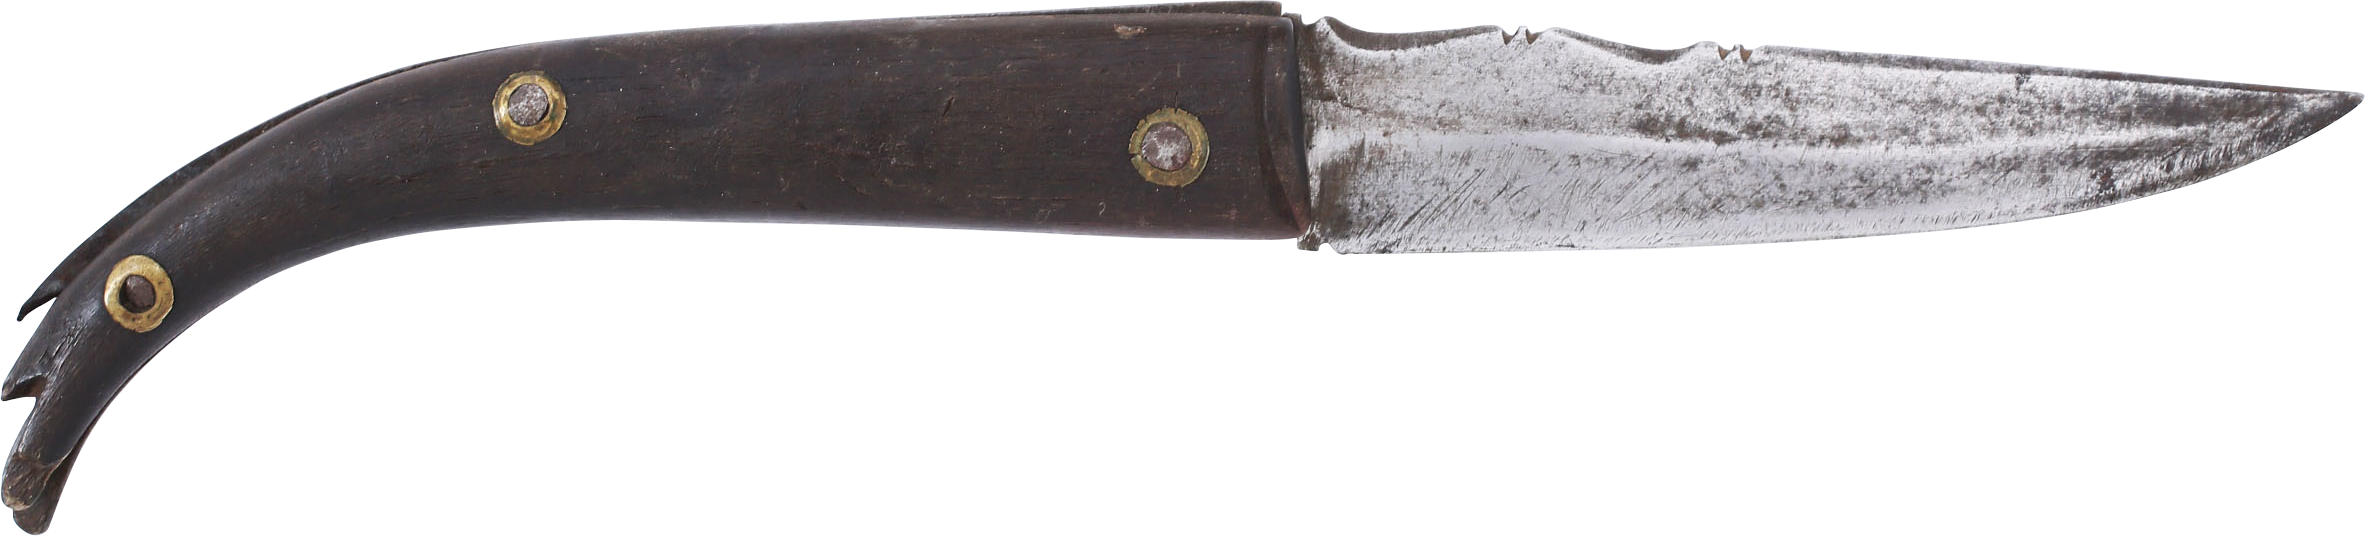 Pirates of the Caribbean! SPANISH SAILOR’S FOLDING KNIFE C.1650-1750 - Fagan Arms